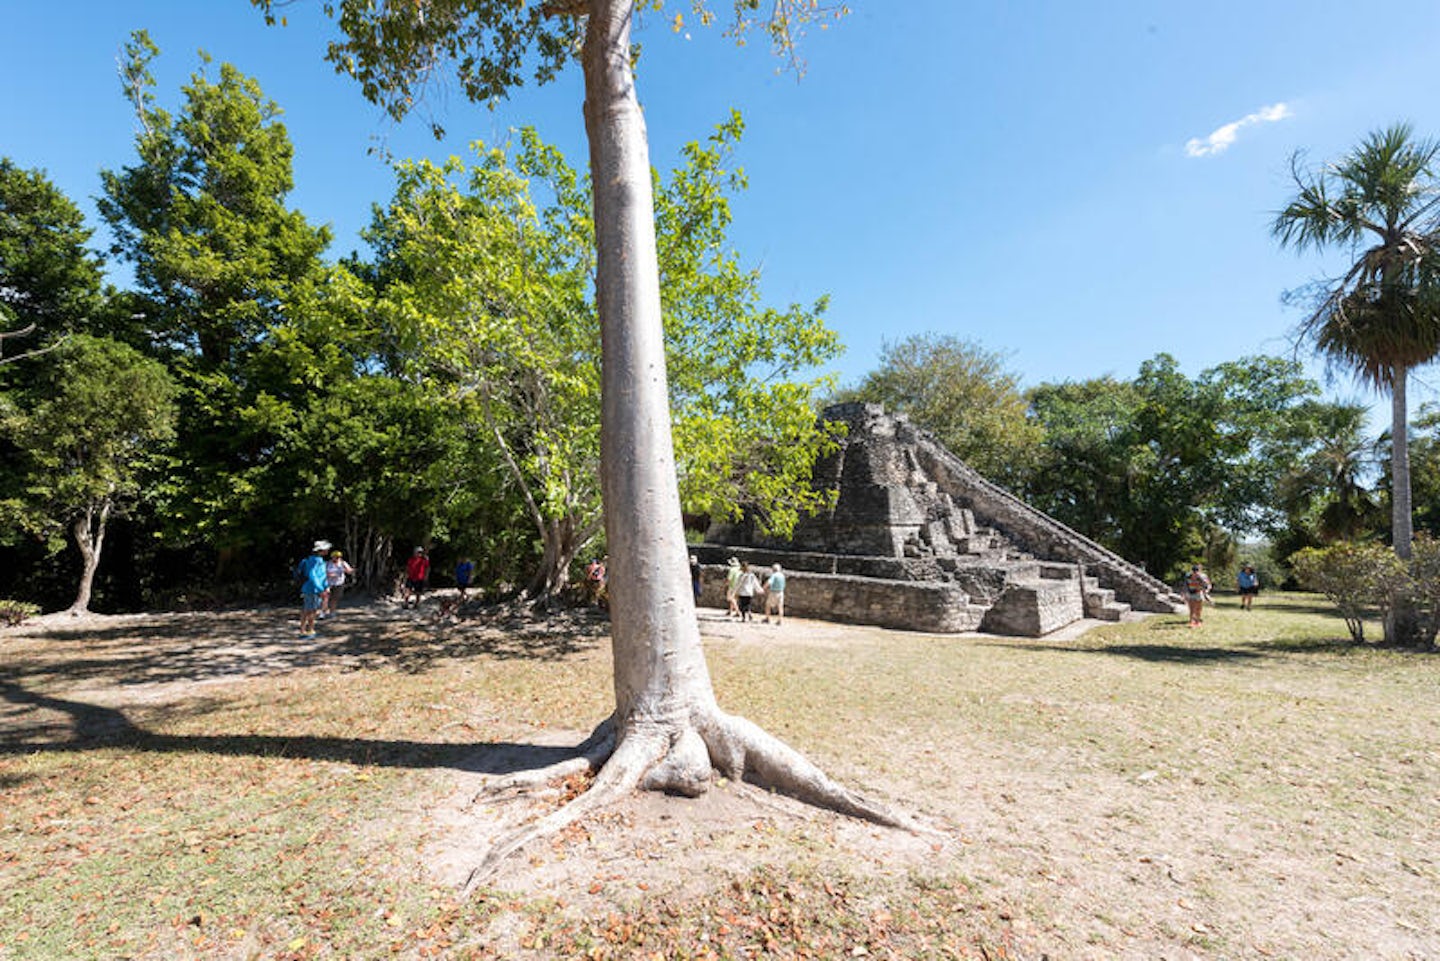 Mayan Ruins Excursion at Costa Maya Port